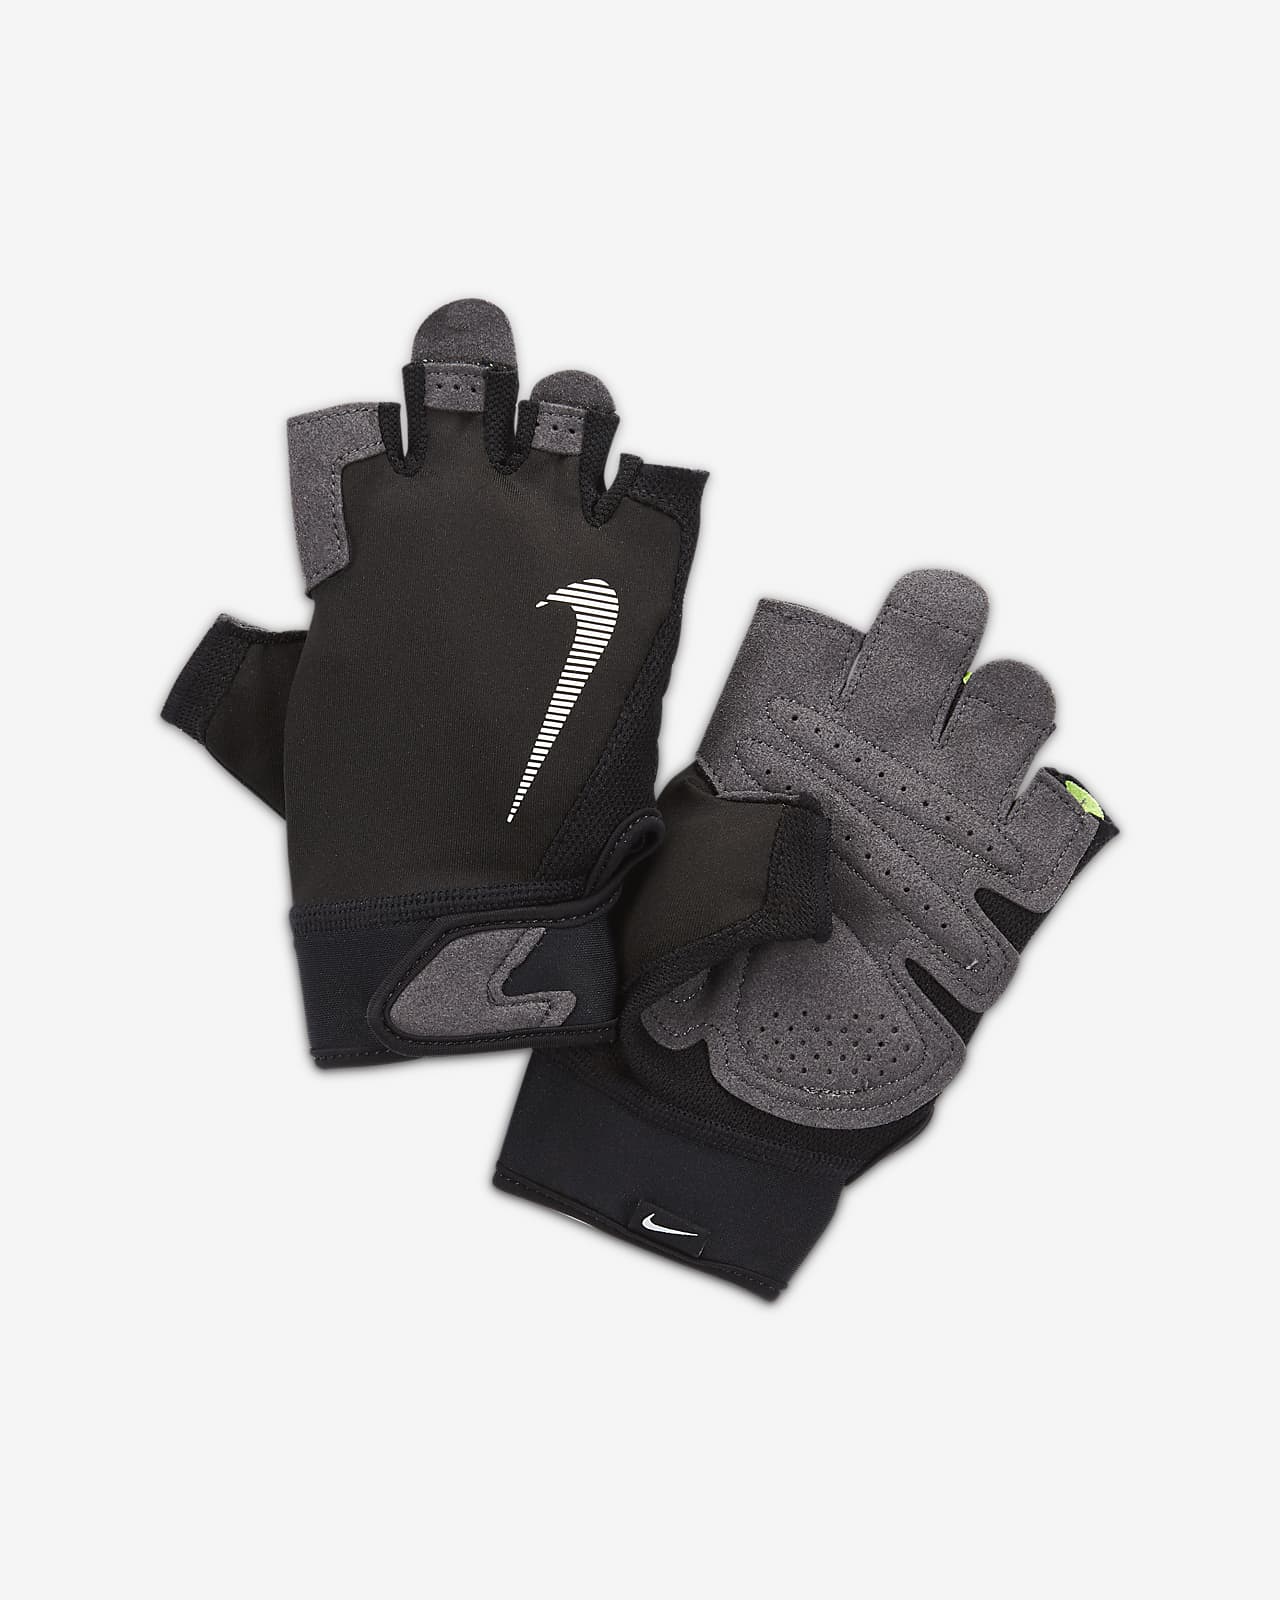 Nike Ultimate Men's Training Gloves